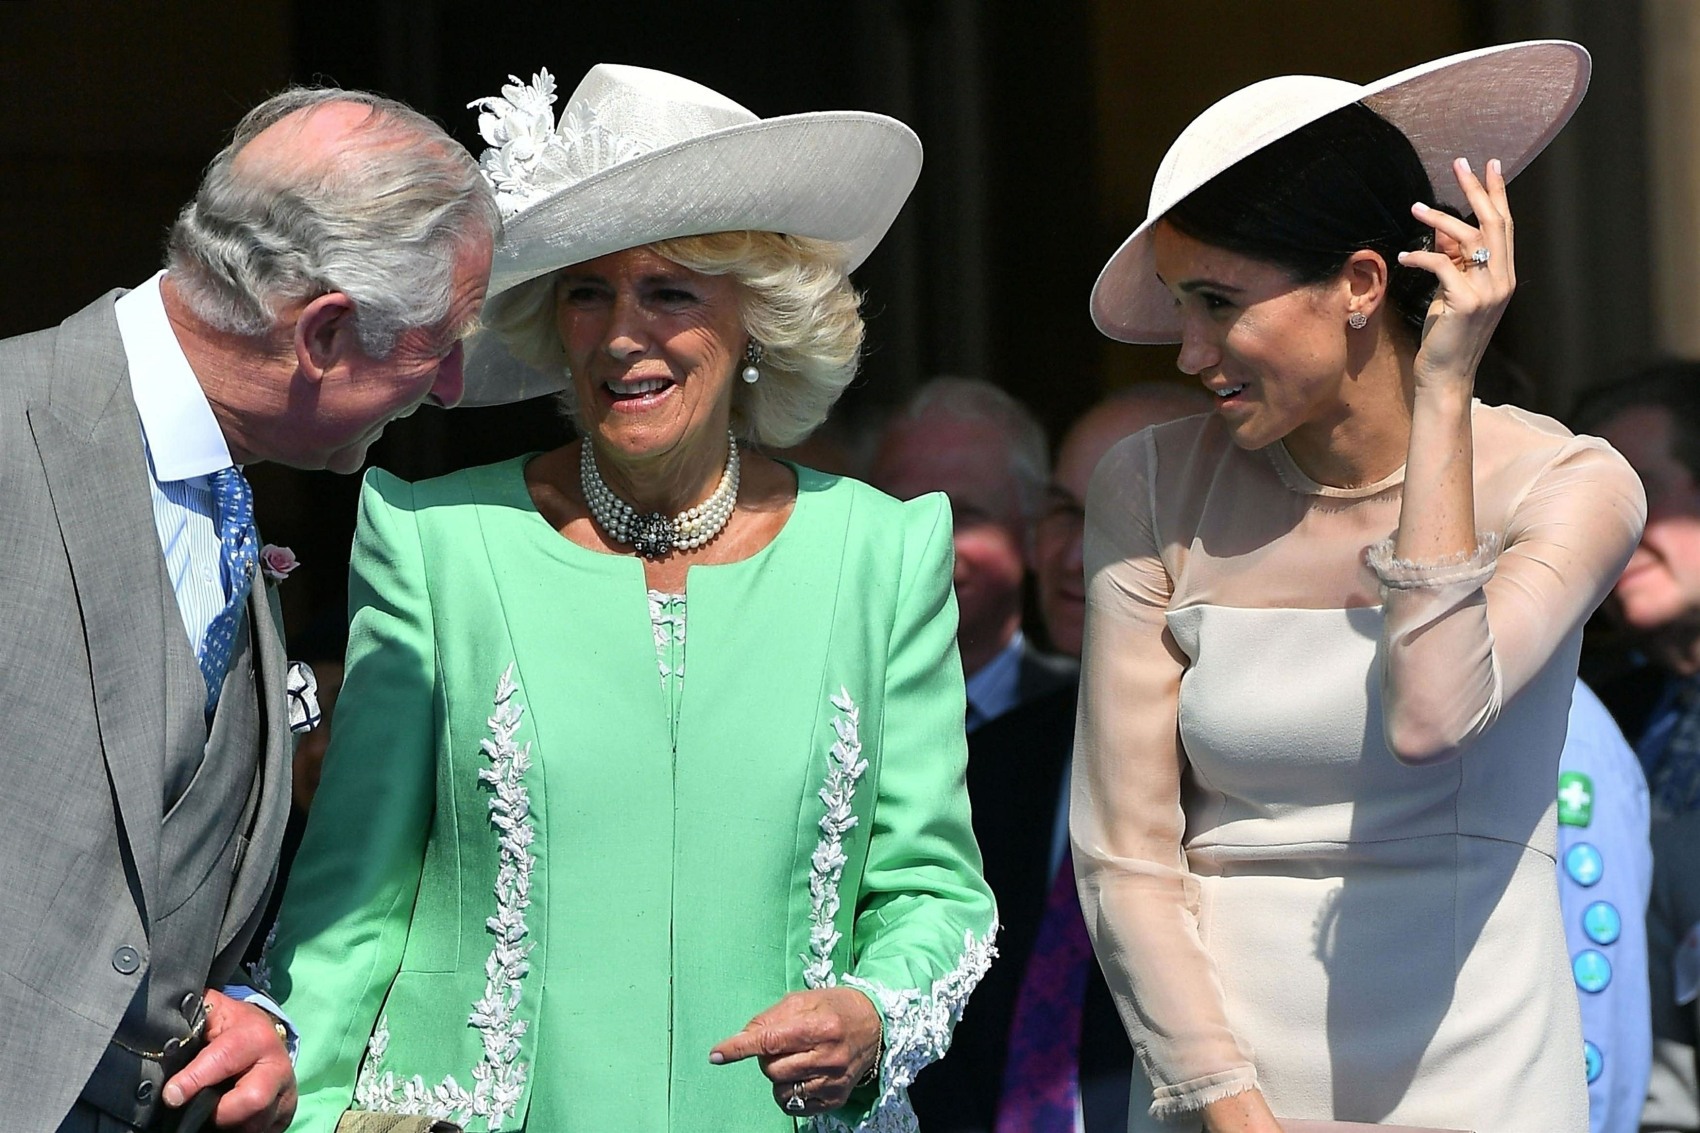 Герцогиня Камилла на свадьбе: мы все гадали, что будет дальше